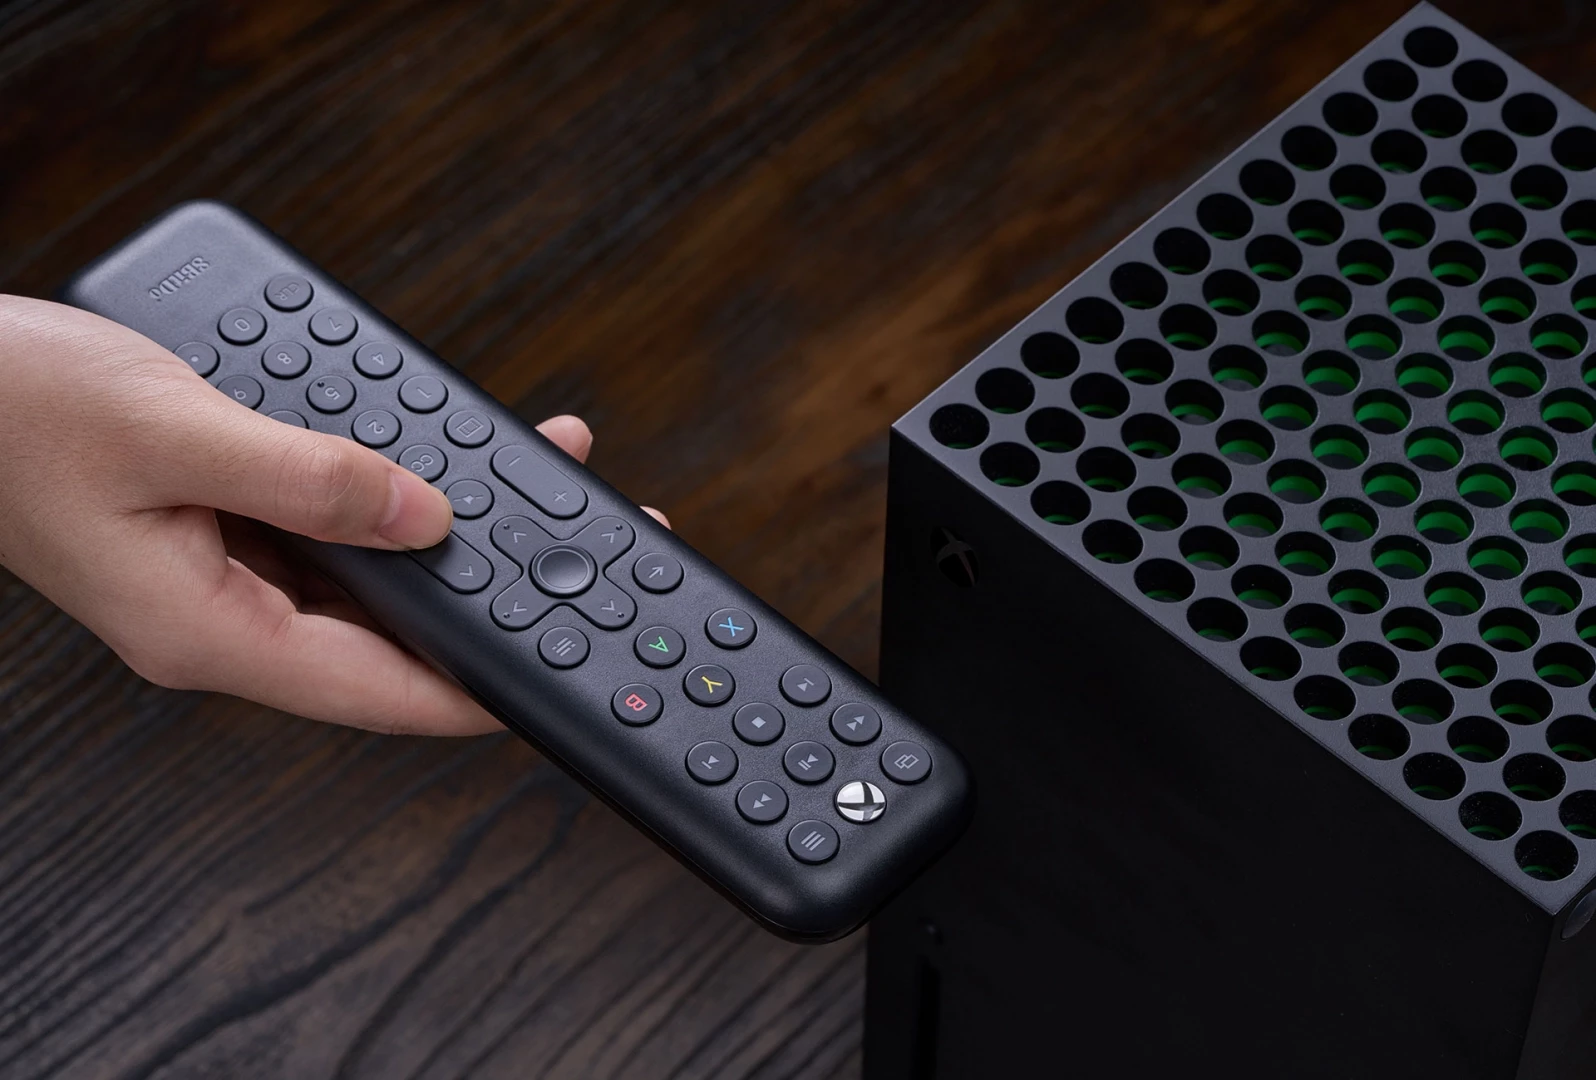 8BitDo Xbox Media Remote - Zwart  voor de Xbox One kopen op nedgame.nl